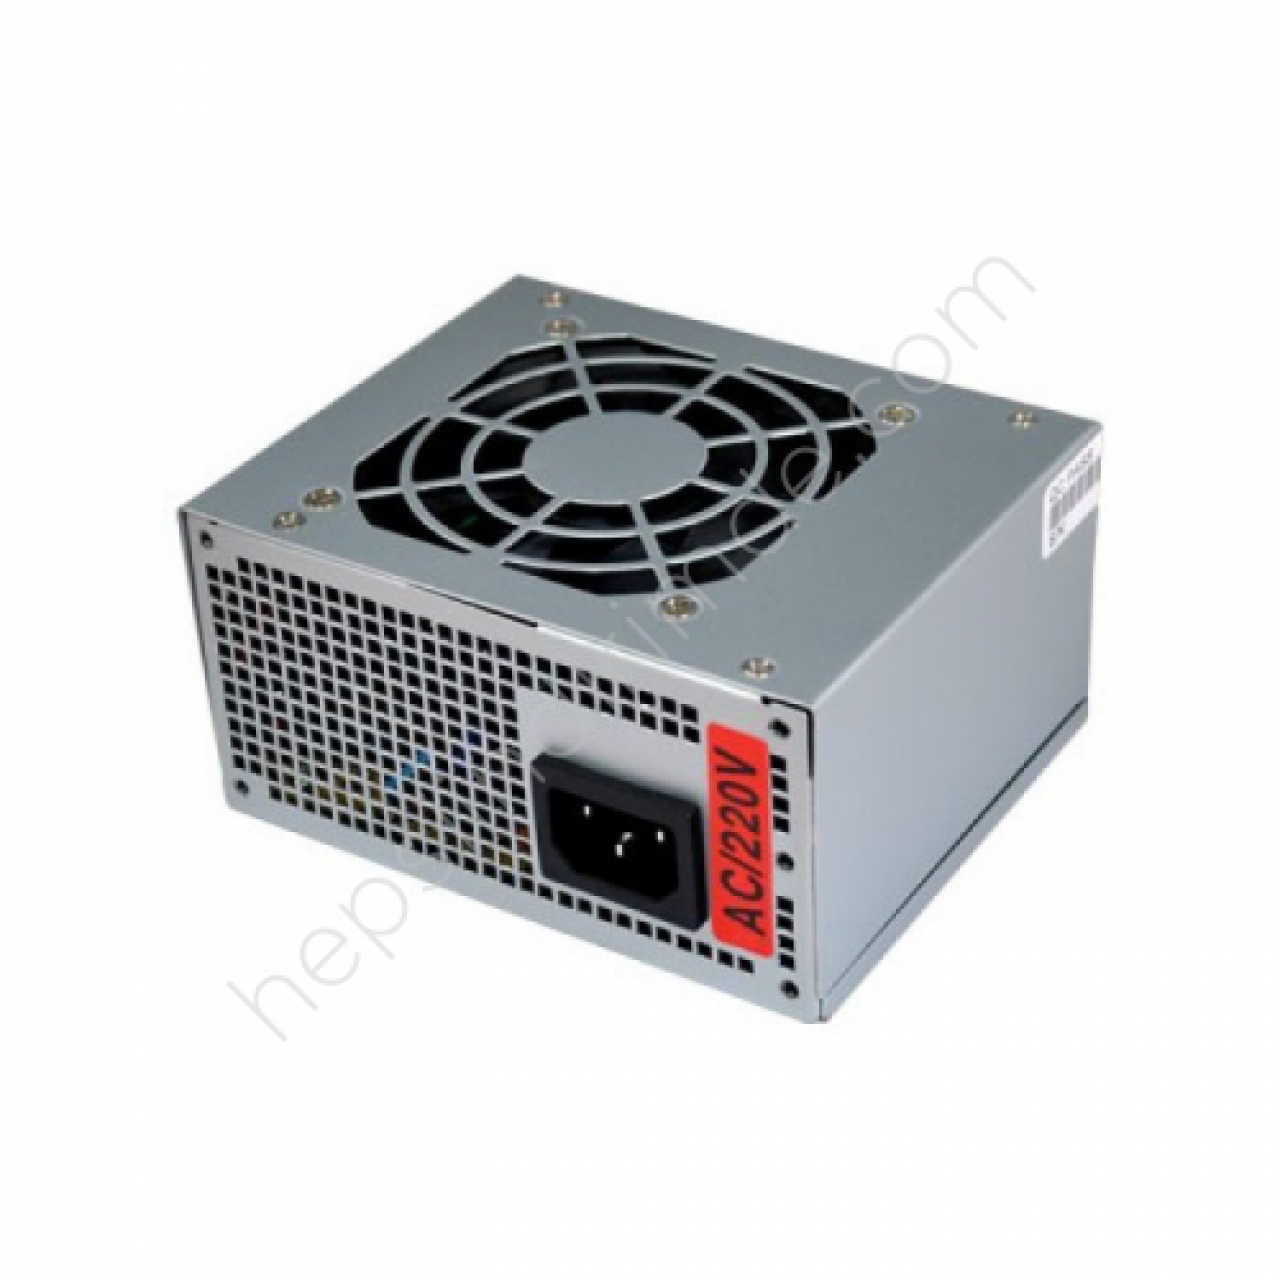 REDROCK 250W, Sata, 8cm Fan, Mini ATX PSU (Micro ATX ve ATX Kasalar ile Uyumlu değildir, Sadece Mini ATX Kasalar için uyumludur.)